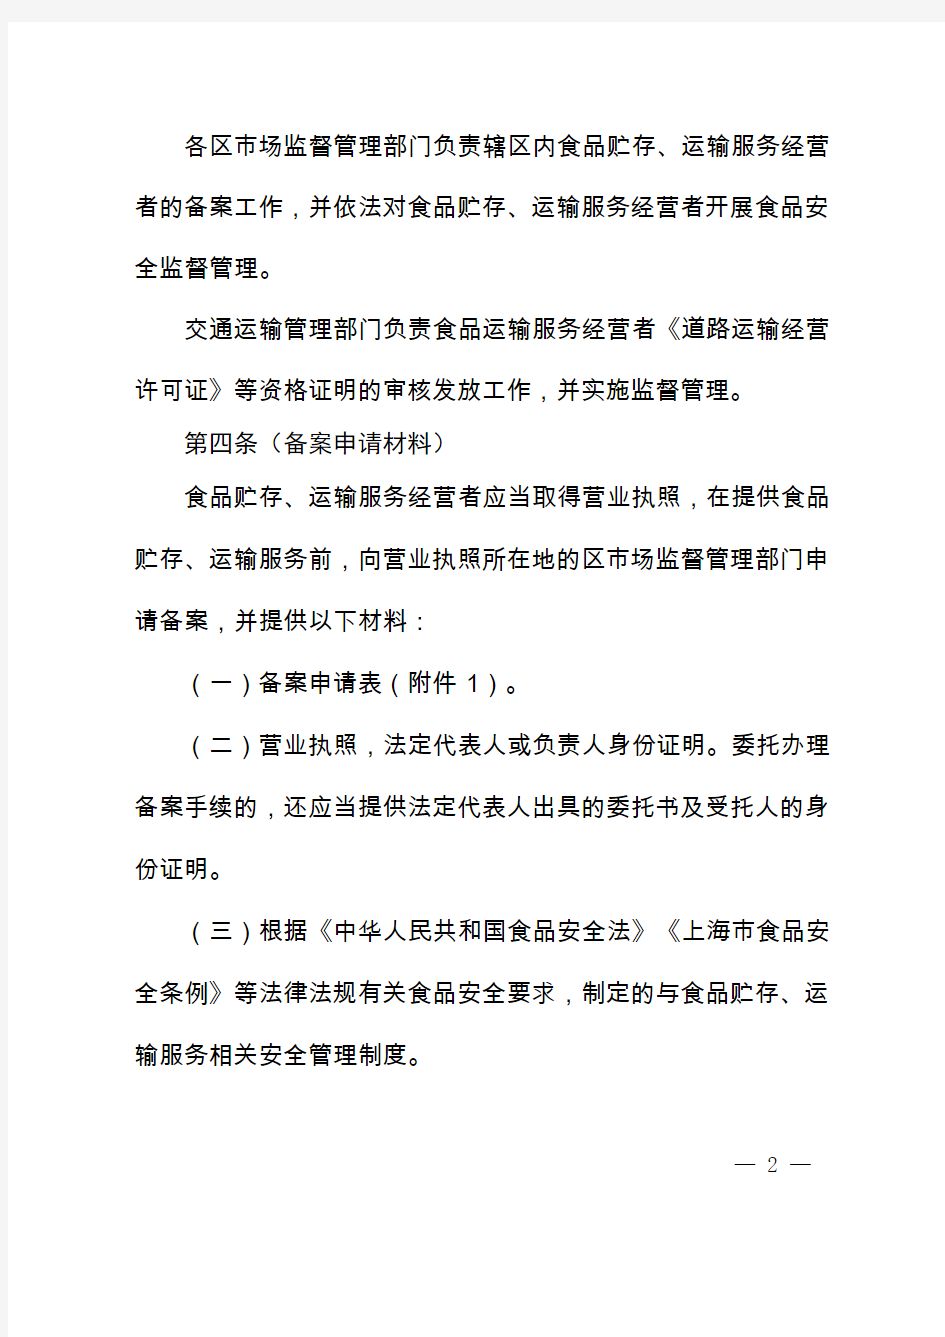 《上海市食品贮存、运输服务经营者备案管理办法》